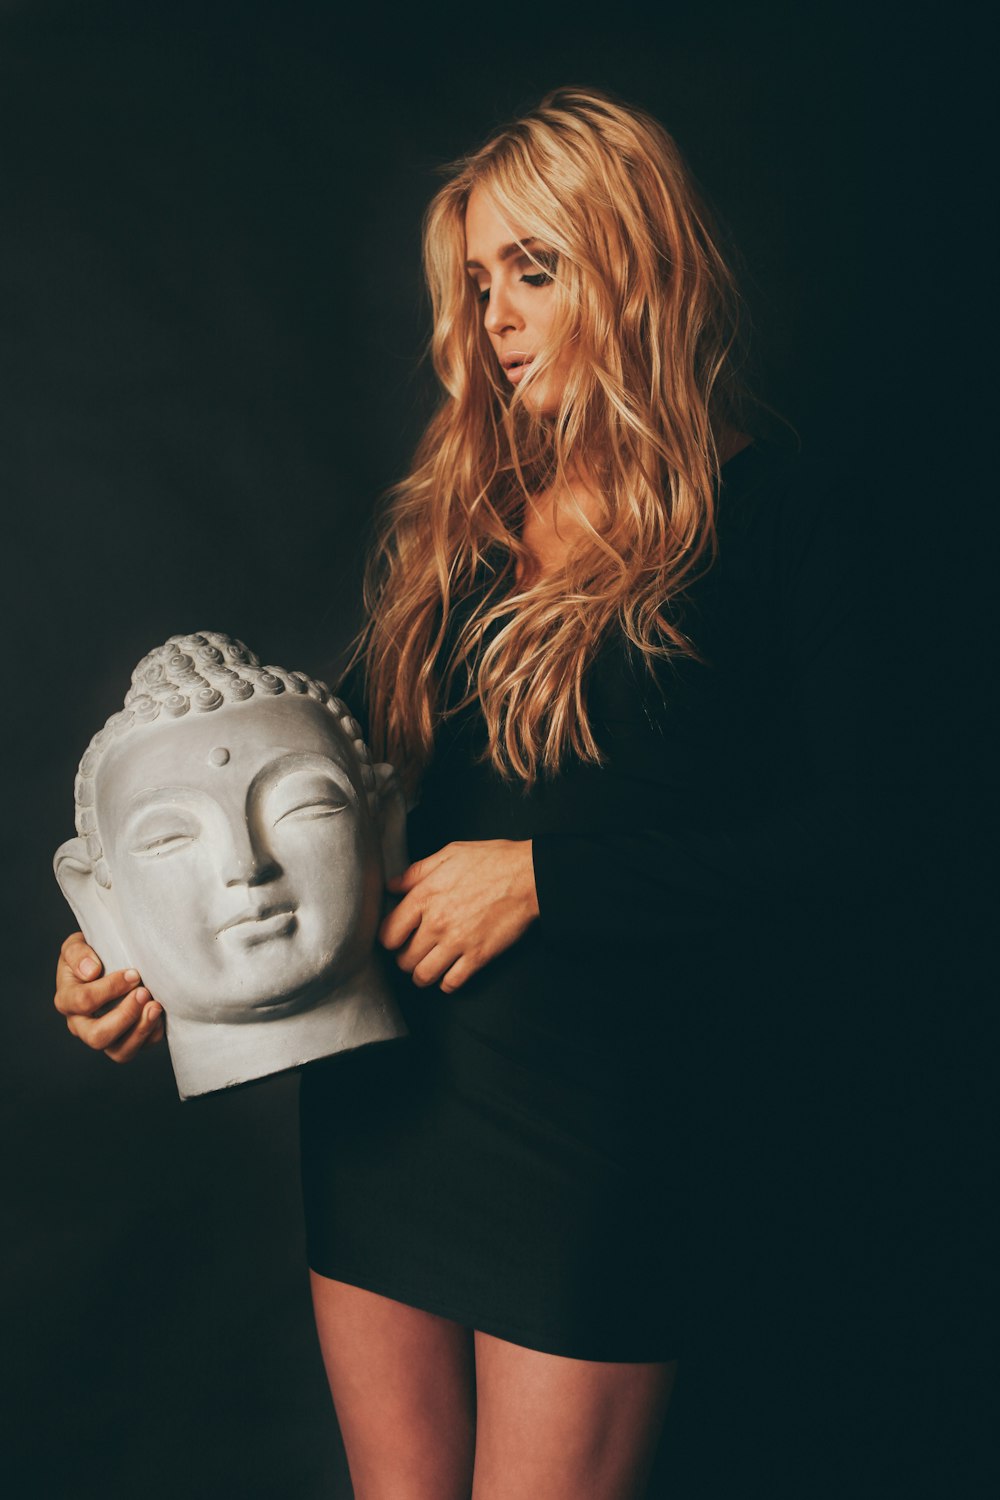 고타마 부처님 머리 동상을 들고 있는 여자